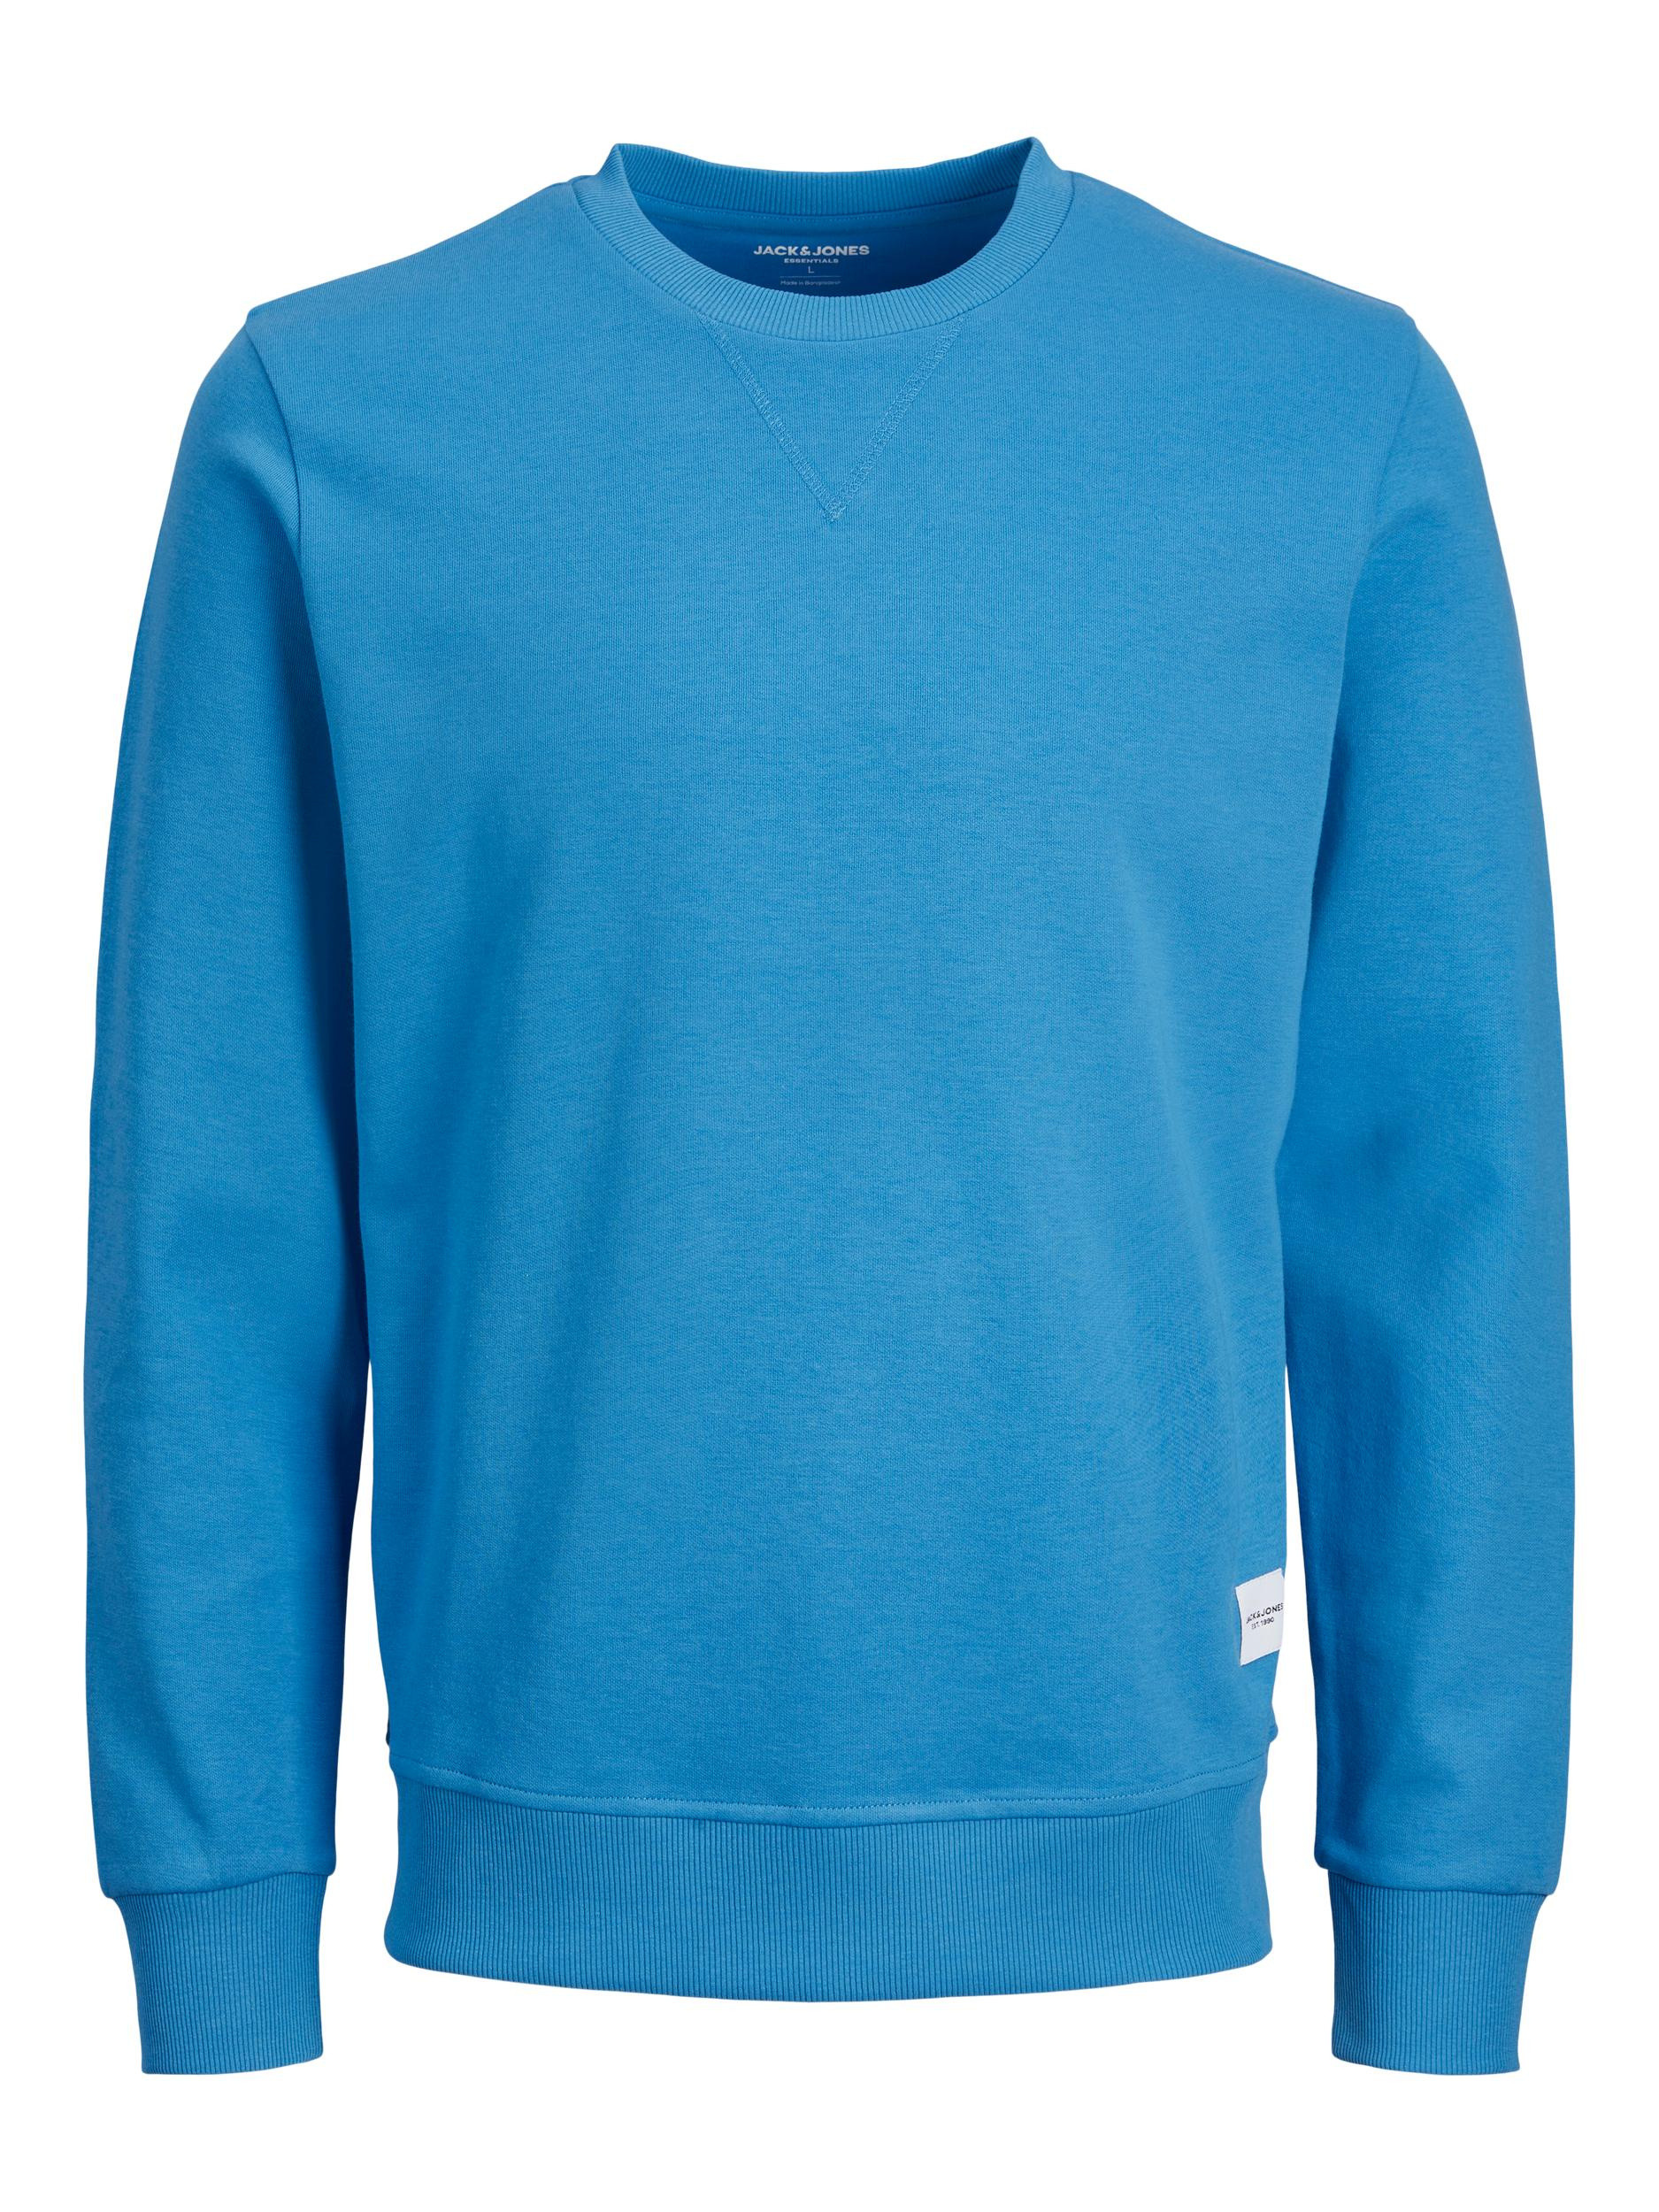 Jack & Jones - Regular-fit pullover, Light Blue, large image number 0